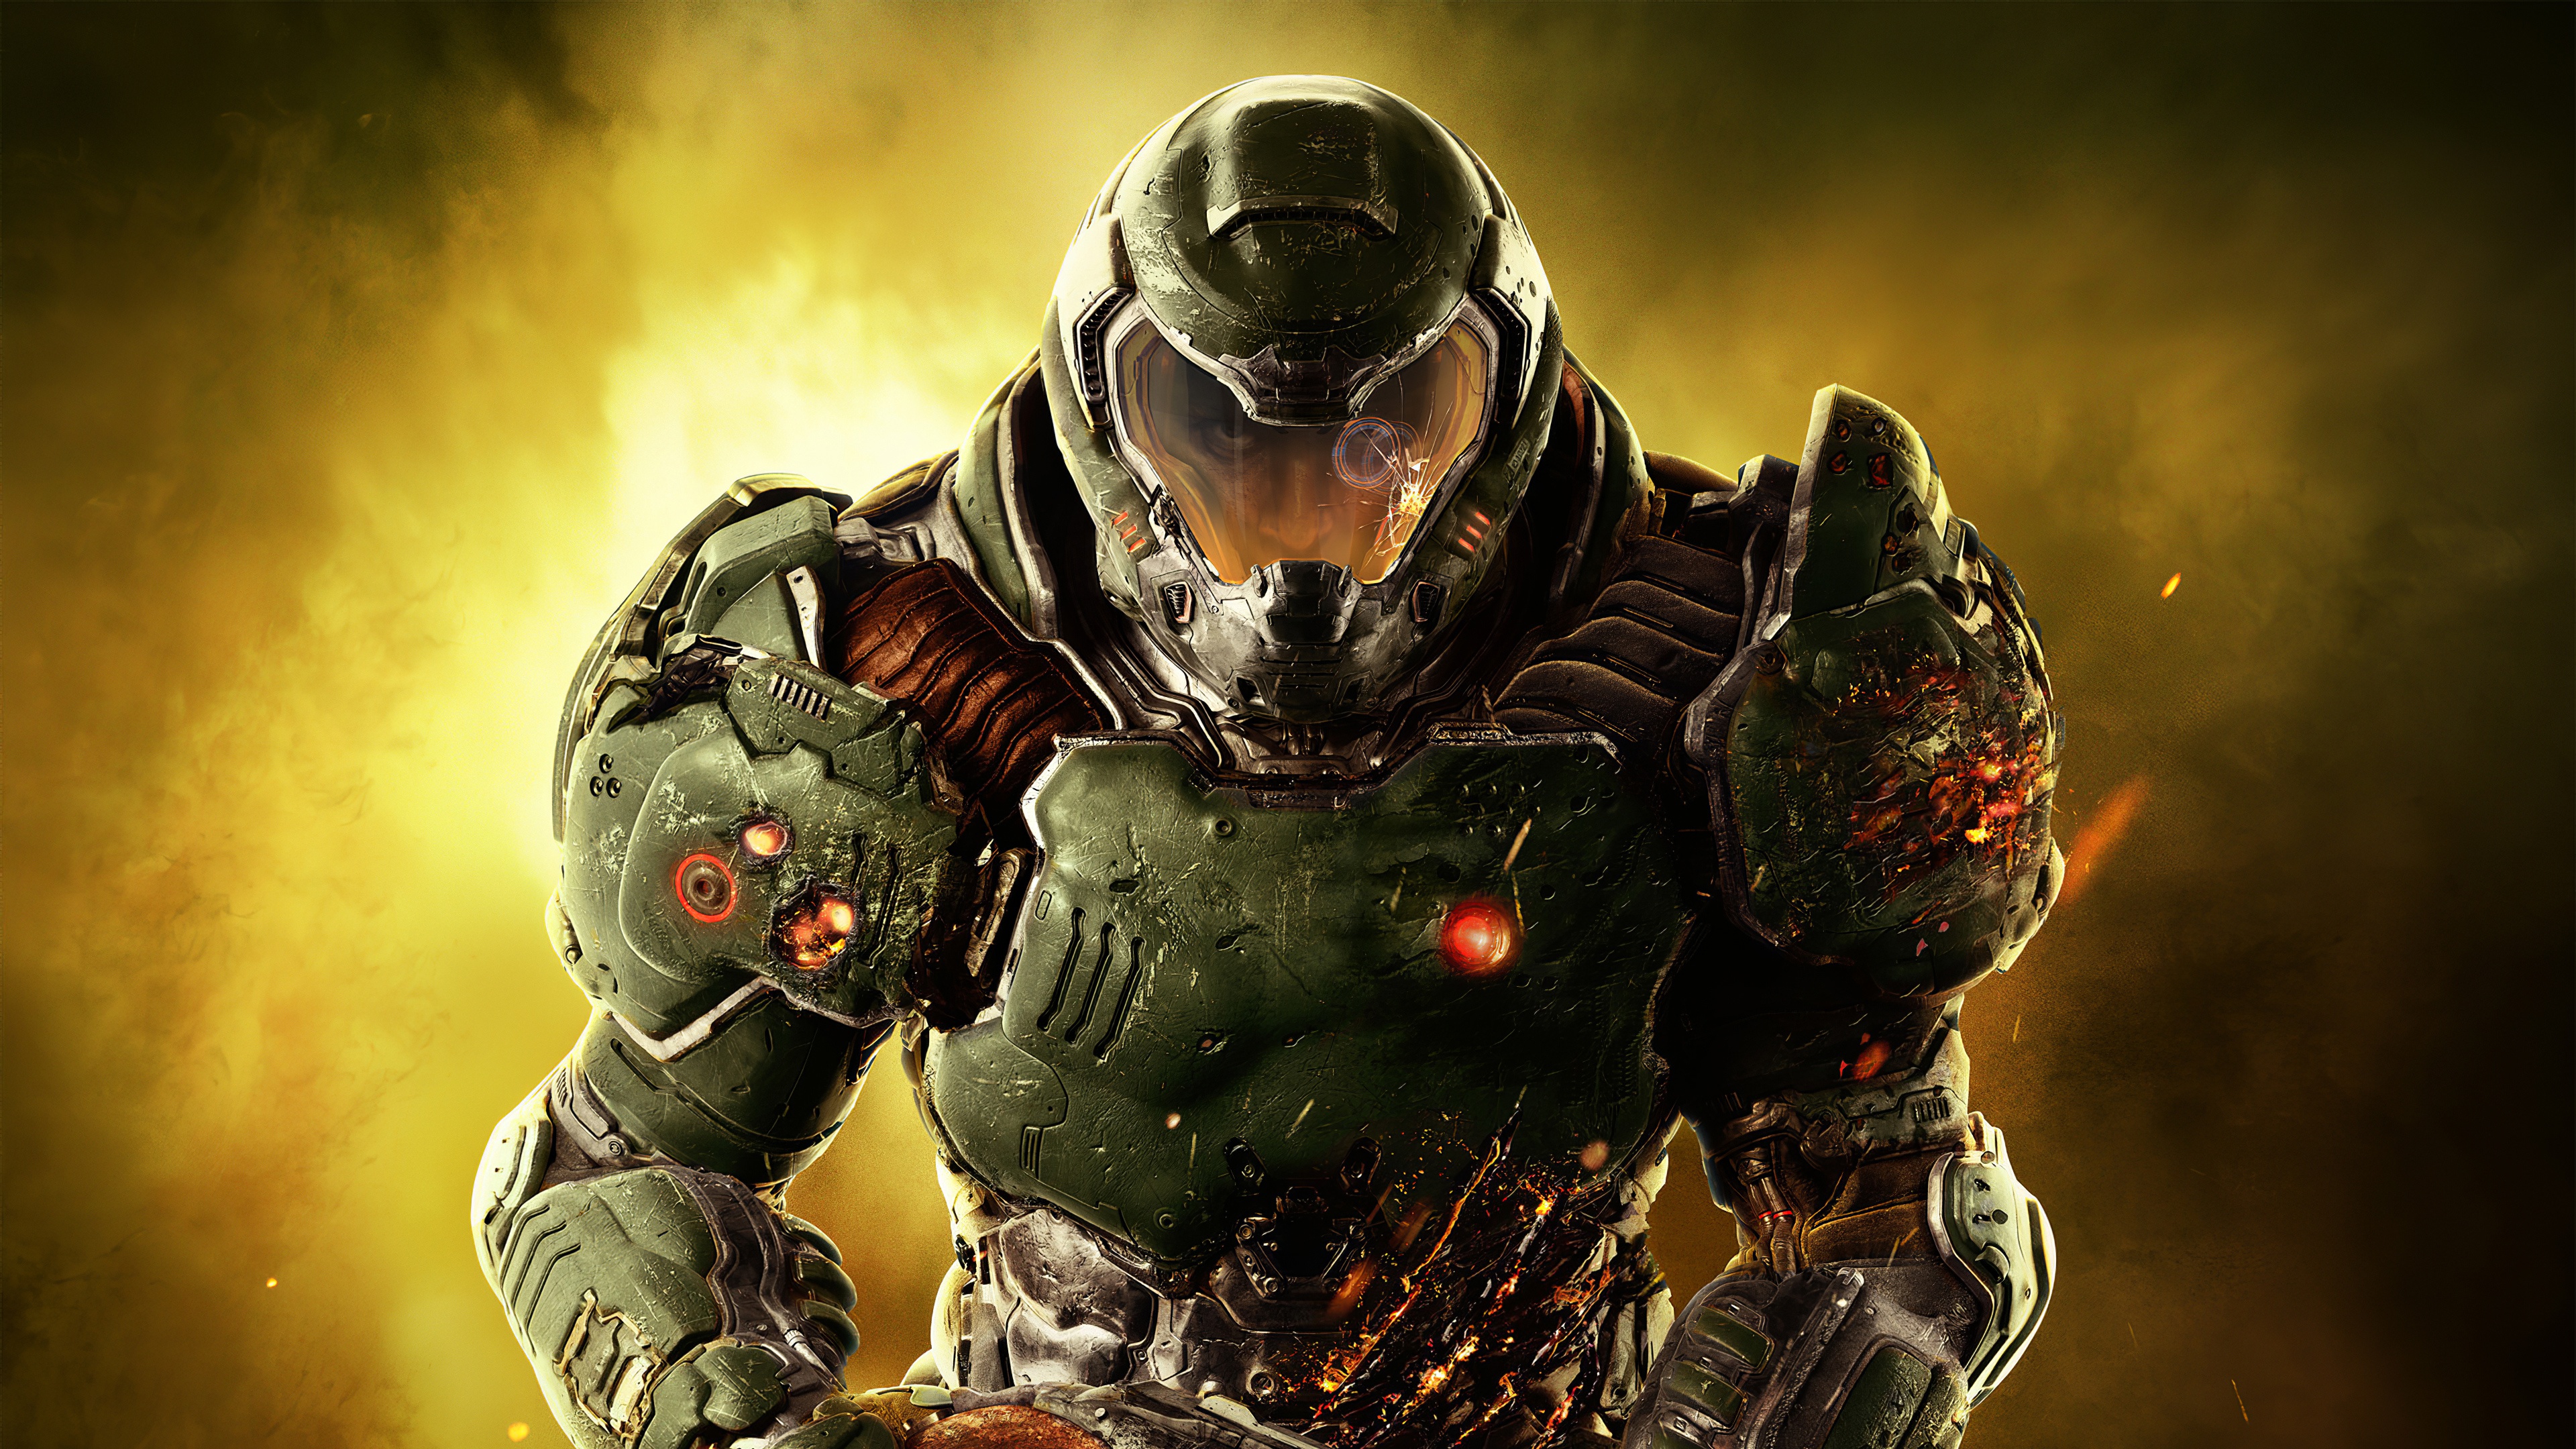 Zastaki.com - Воин в броне персонаж компьютерной игры Doom Eternal, 2020